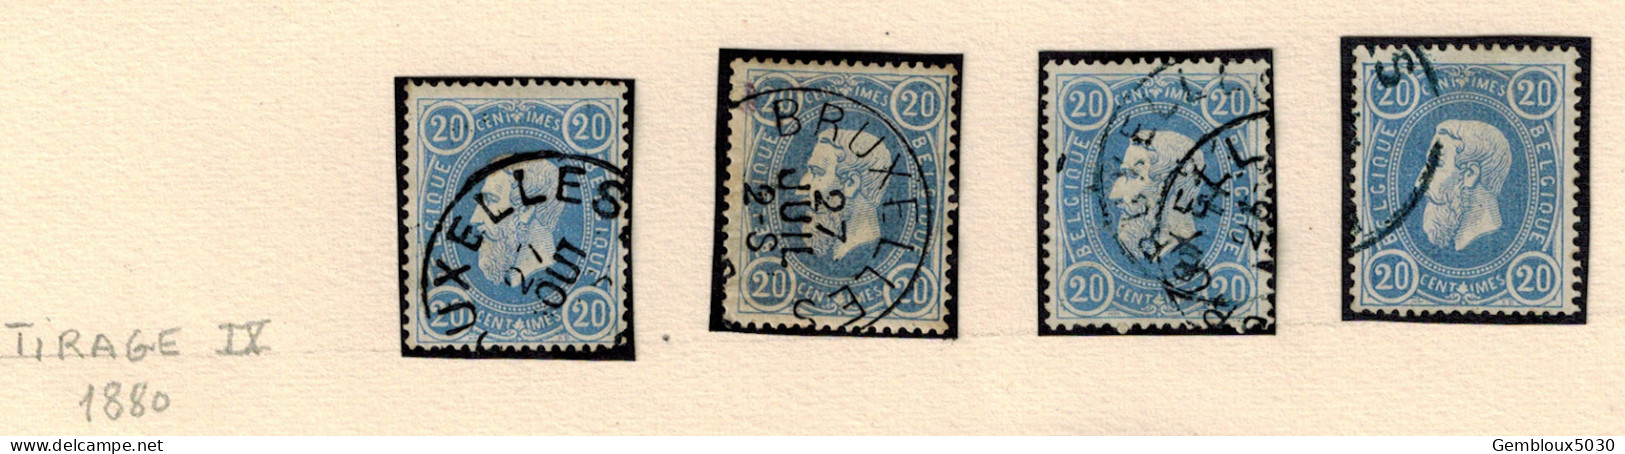 N° 31 (4x) 1880 Tirage IX - Alla Rinfusa (max 999 Francobolli)